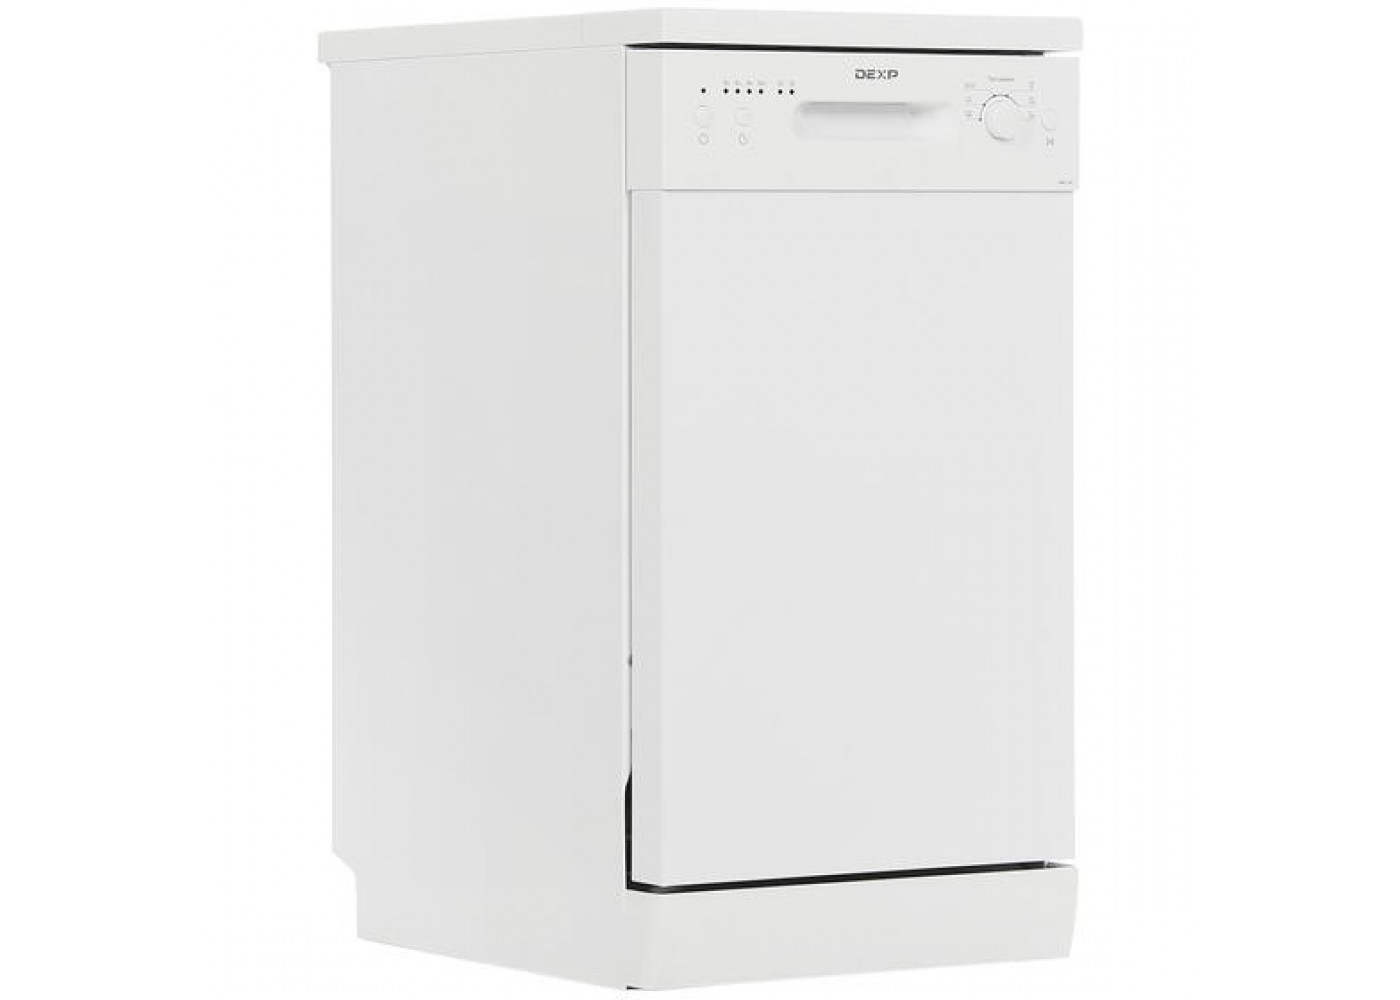 Посудомоечная машина dexp m9c7pd. Посудомоечная машина DEXP m9c6pd. Посудомоечная машина Hansa zwm456weh белый. Посудомойка дексп m9c7pd. Посудомоечная машина DEXP g11d6pf белый.